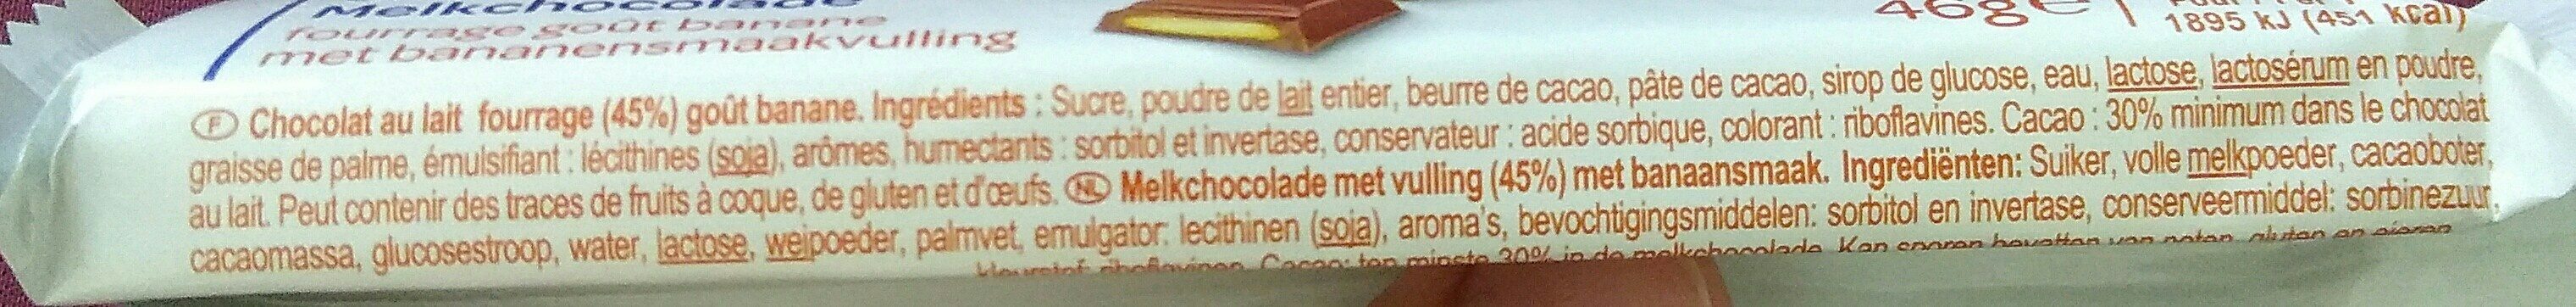 Chocolat au lait - Ingrédients